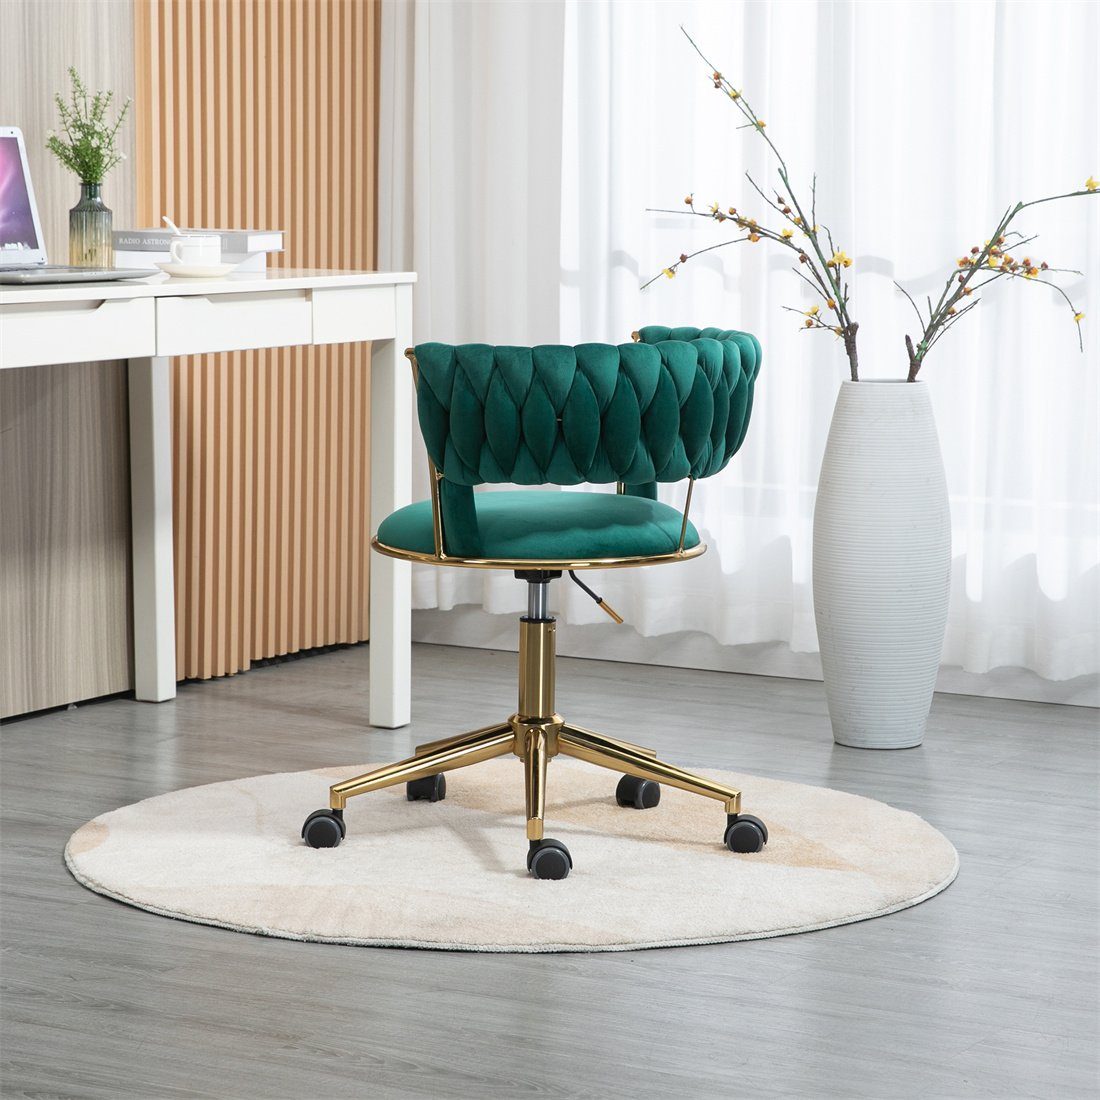 DÖRÖY Drehstuhl Home Chair,Kosmetikstuhl,Verstellbarer Computerstuhl,grün Office